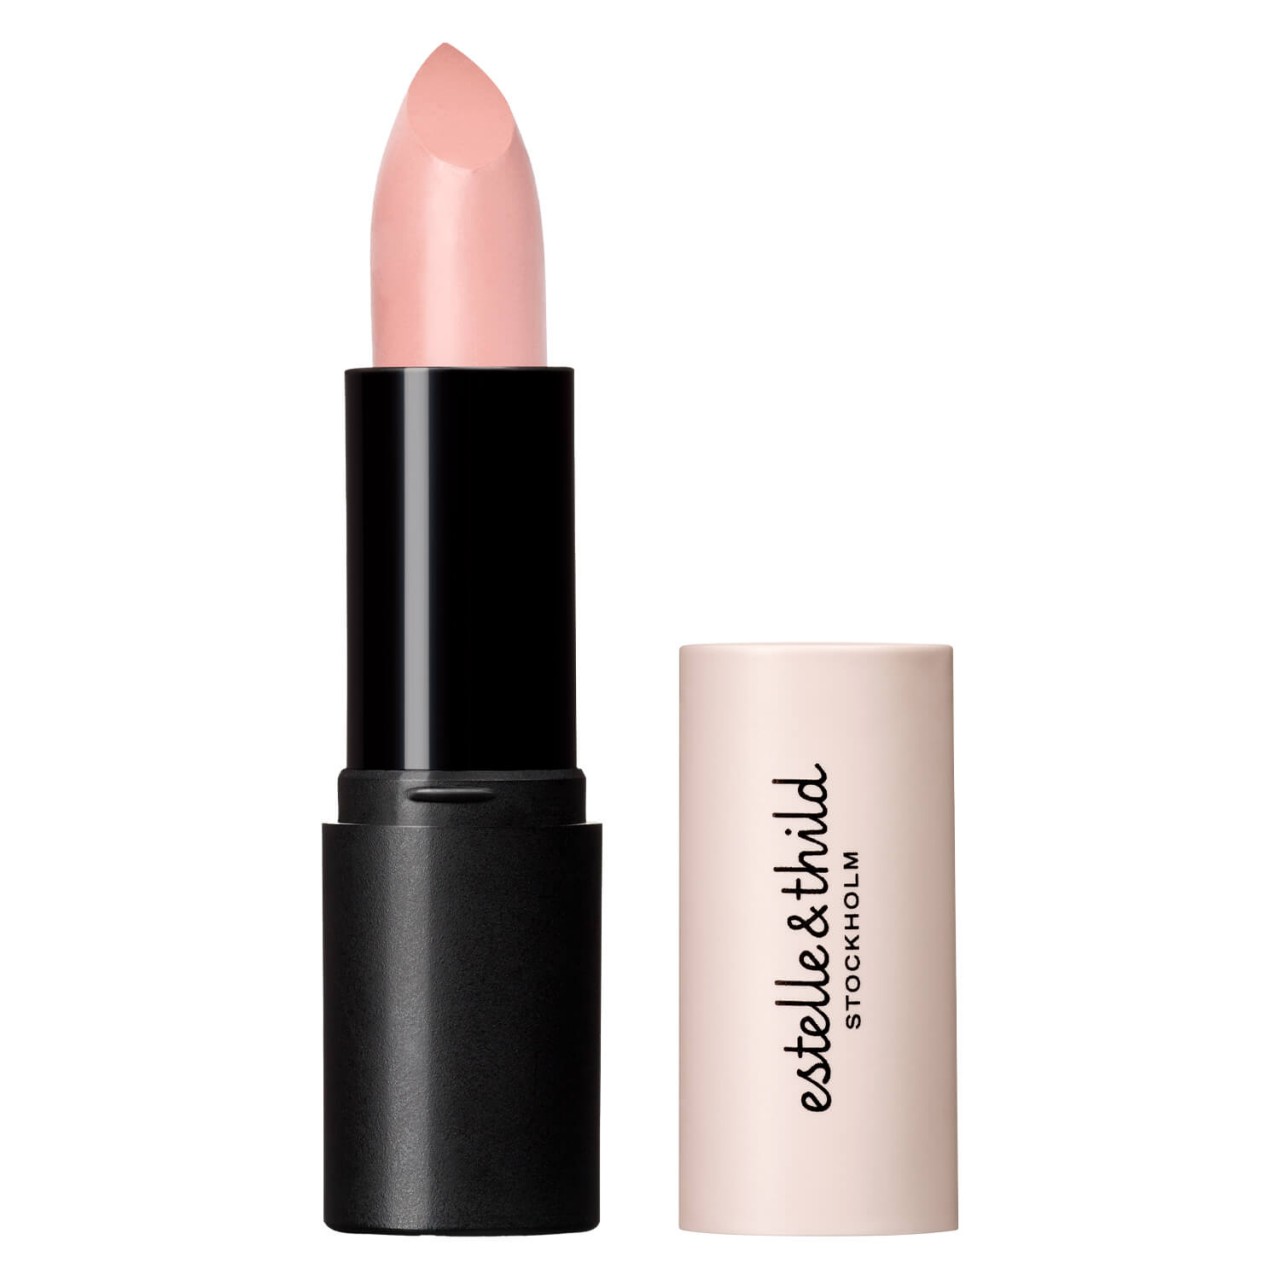 Estelle&Thild Make-Up - Cream Lipstick Springtime von Estelle&Thild